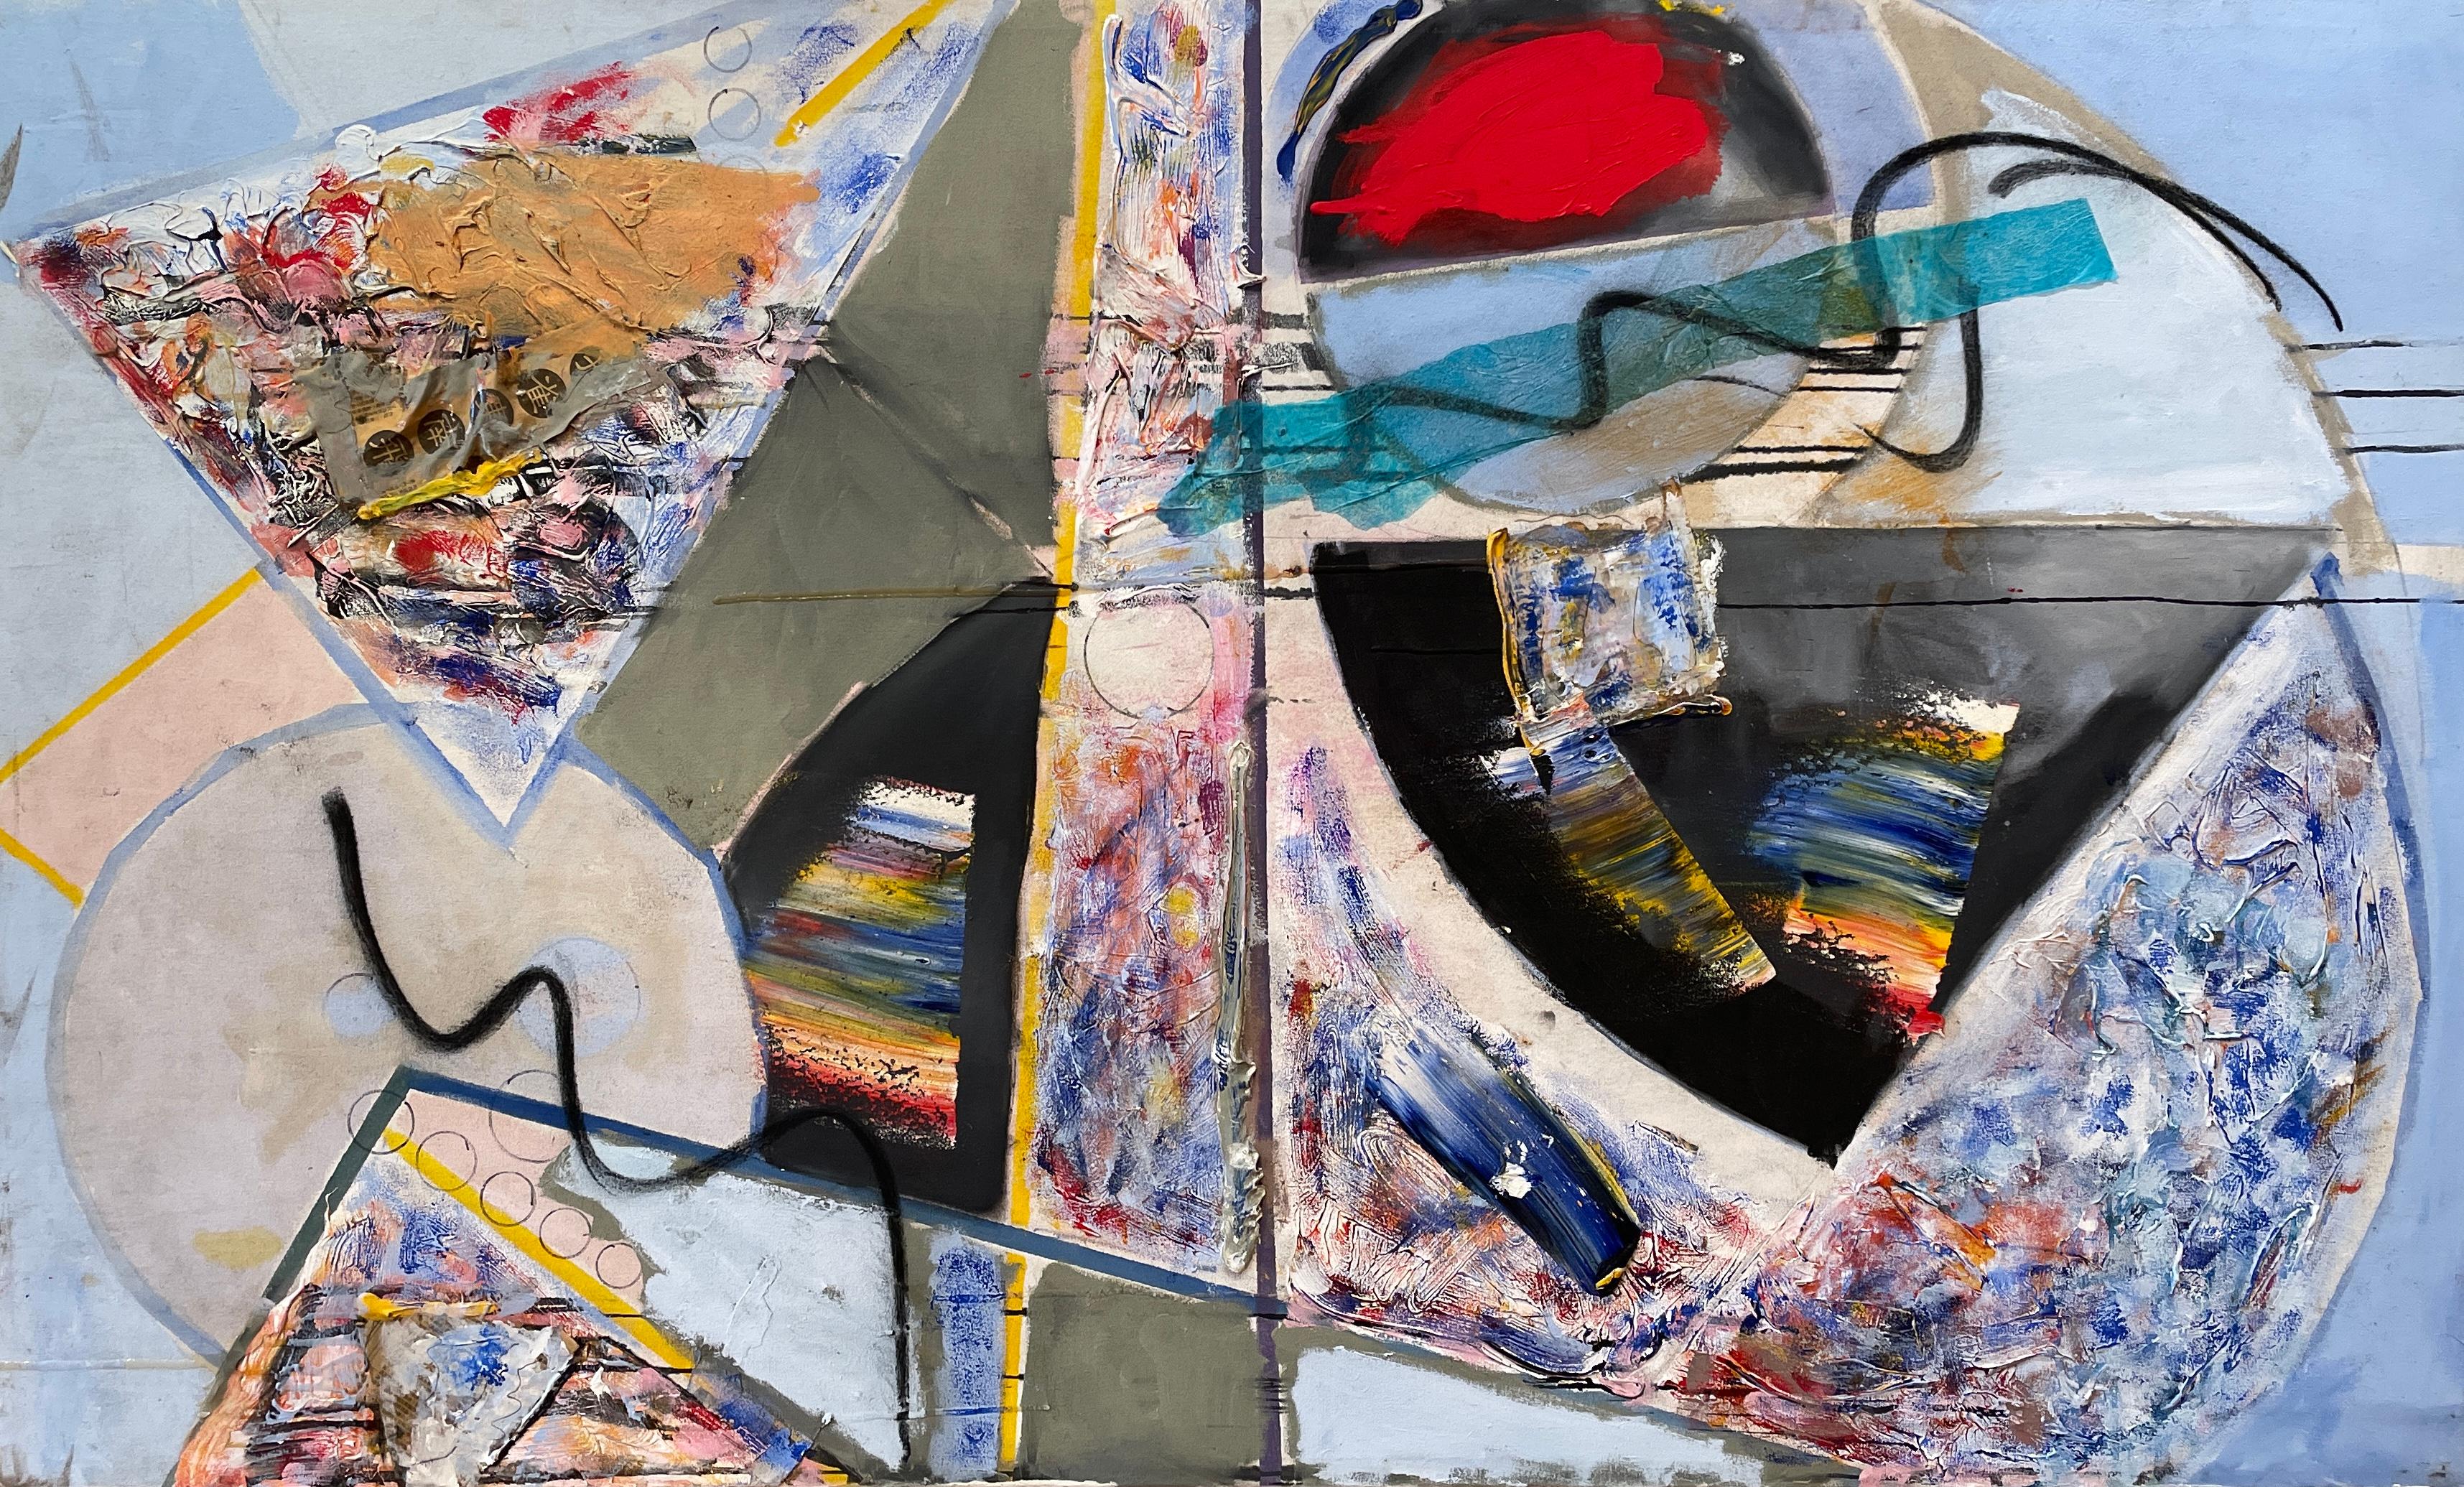 Steven H. Rehfelds "1994" ist ein vielseitiges und dynamisches, 38" x 64" großes Kunstwerk in Mischtechnik, das die temperamentvolle Essenz des abstrakten Expressionismus widerspiegelt. Die Leinwand ist eine Symphonie aus kontrastierenden Texturen